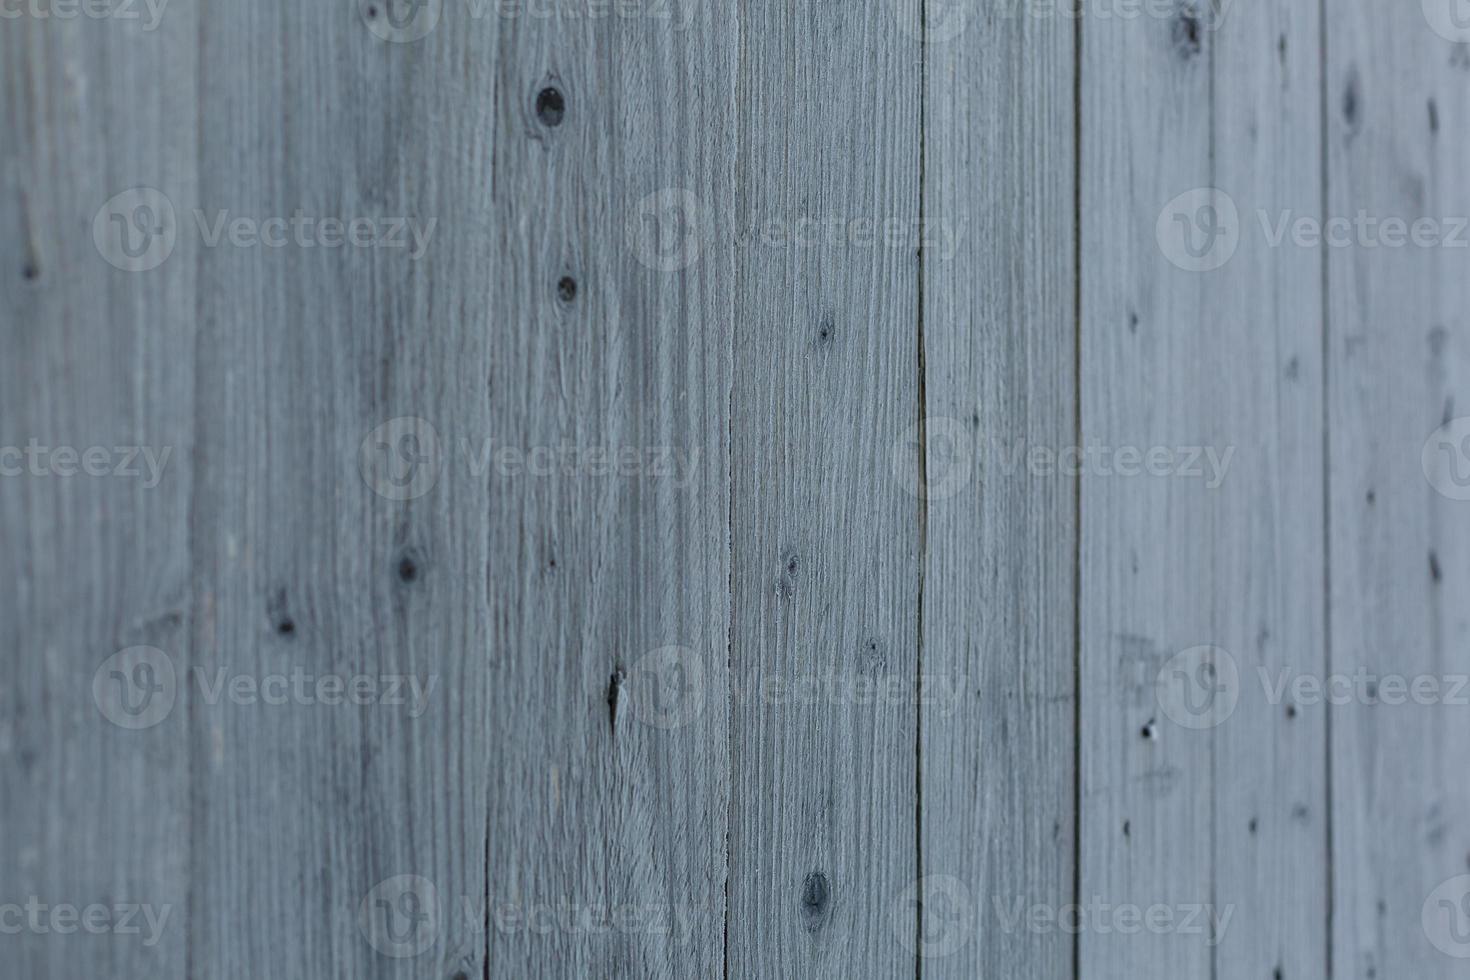 el fondo de patrones naturales de textura de madera blanca foto